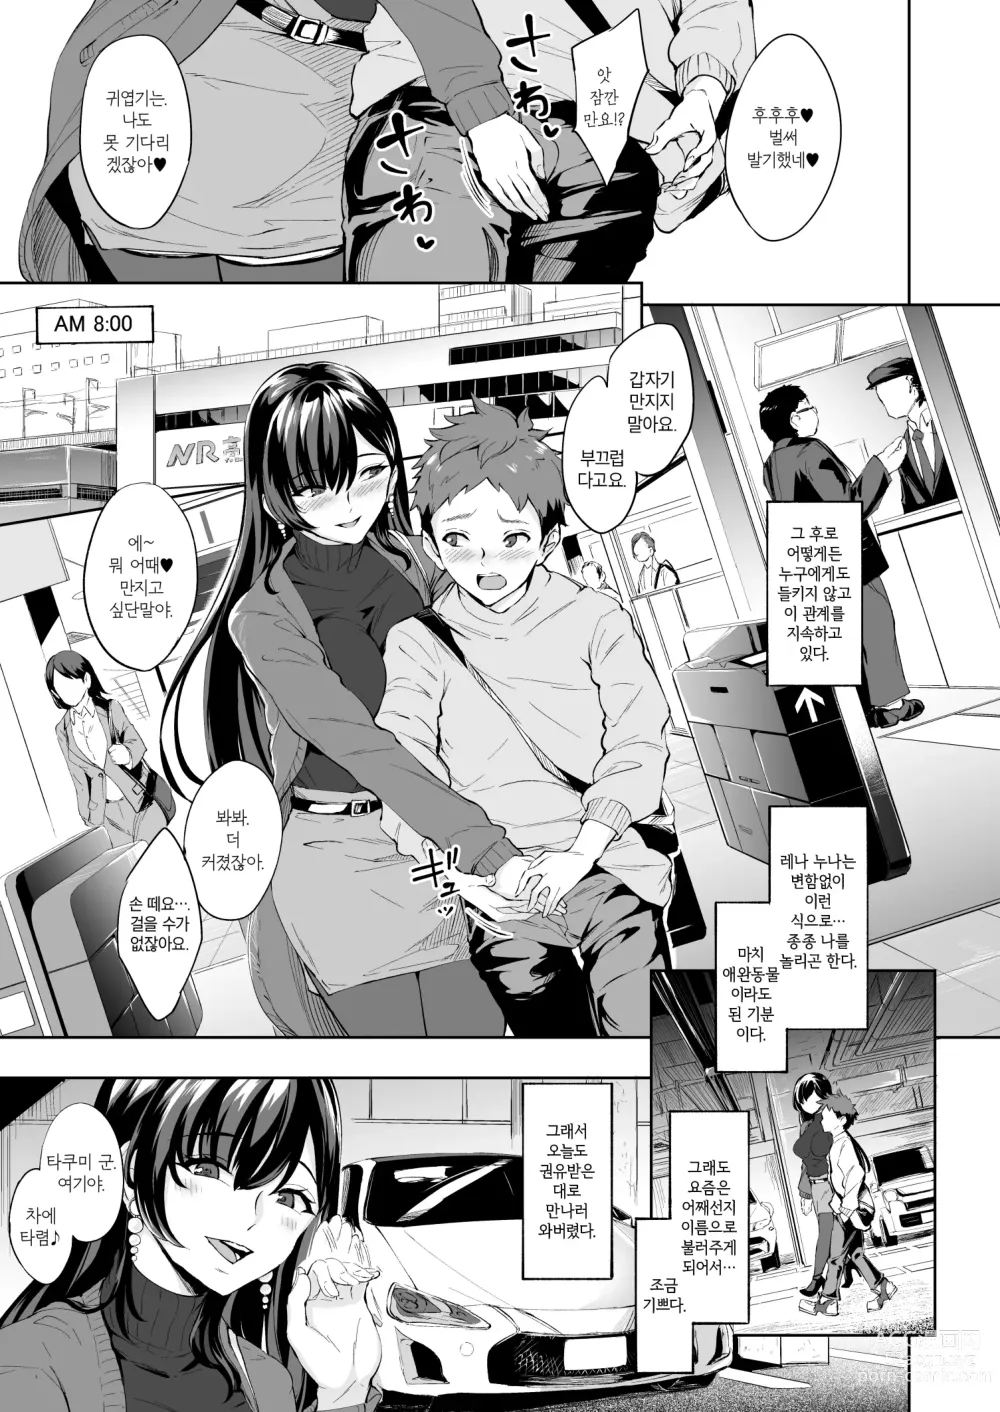 Page 2 of doujinshi 나타난 치녀는 연하킬러인 스카토로 변태였습니다 2